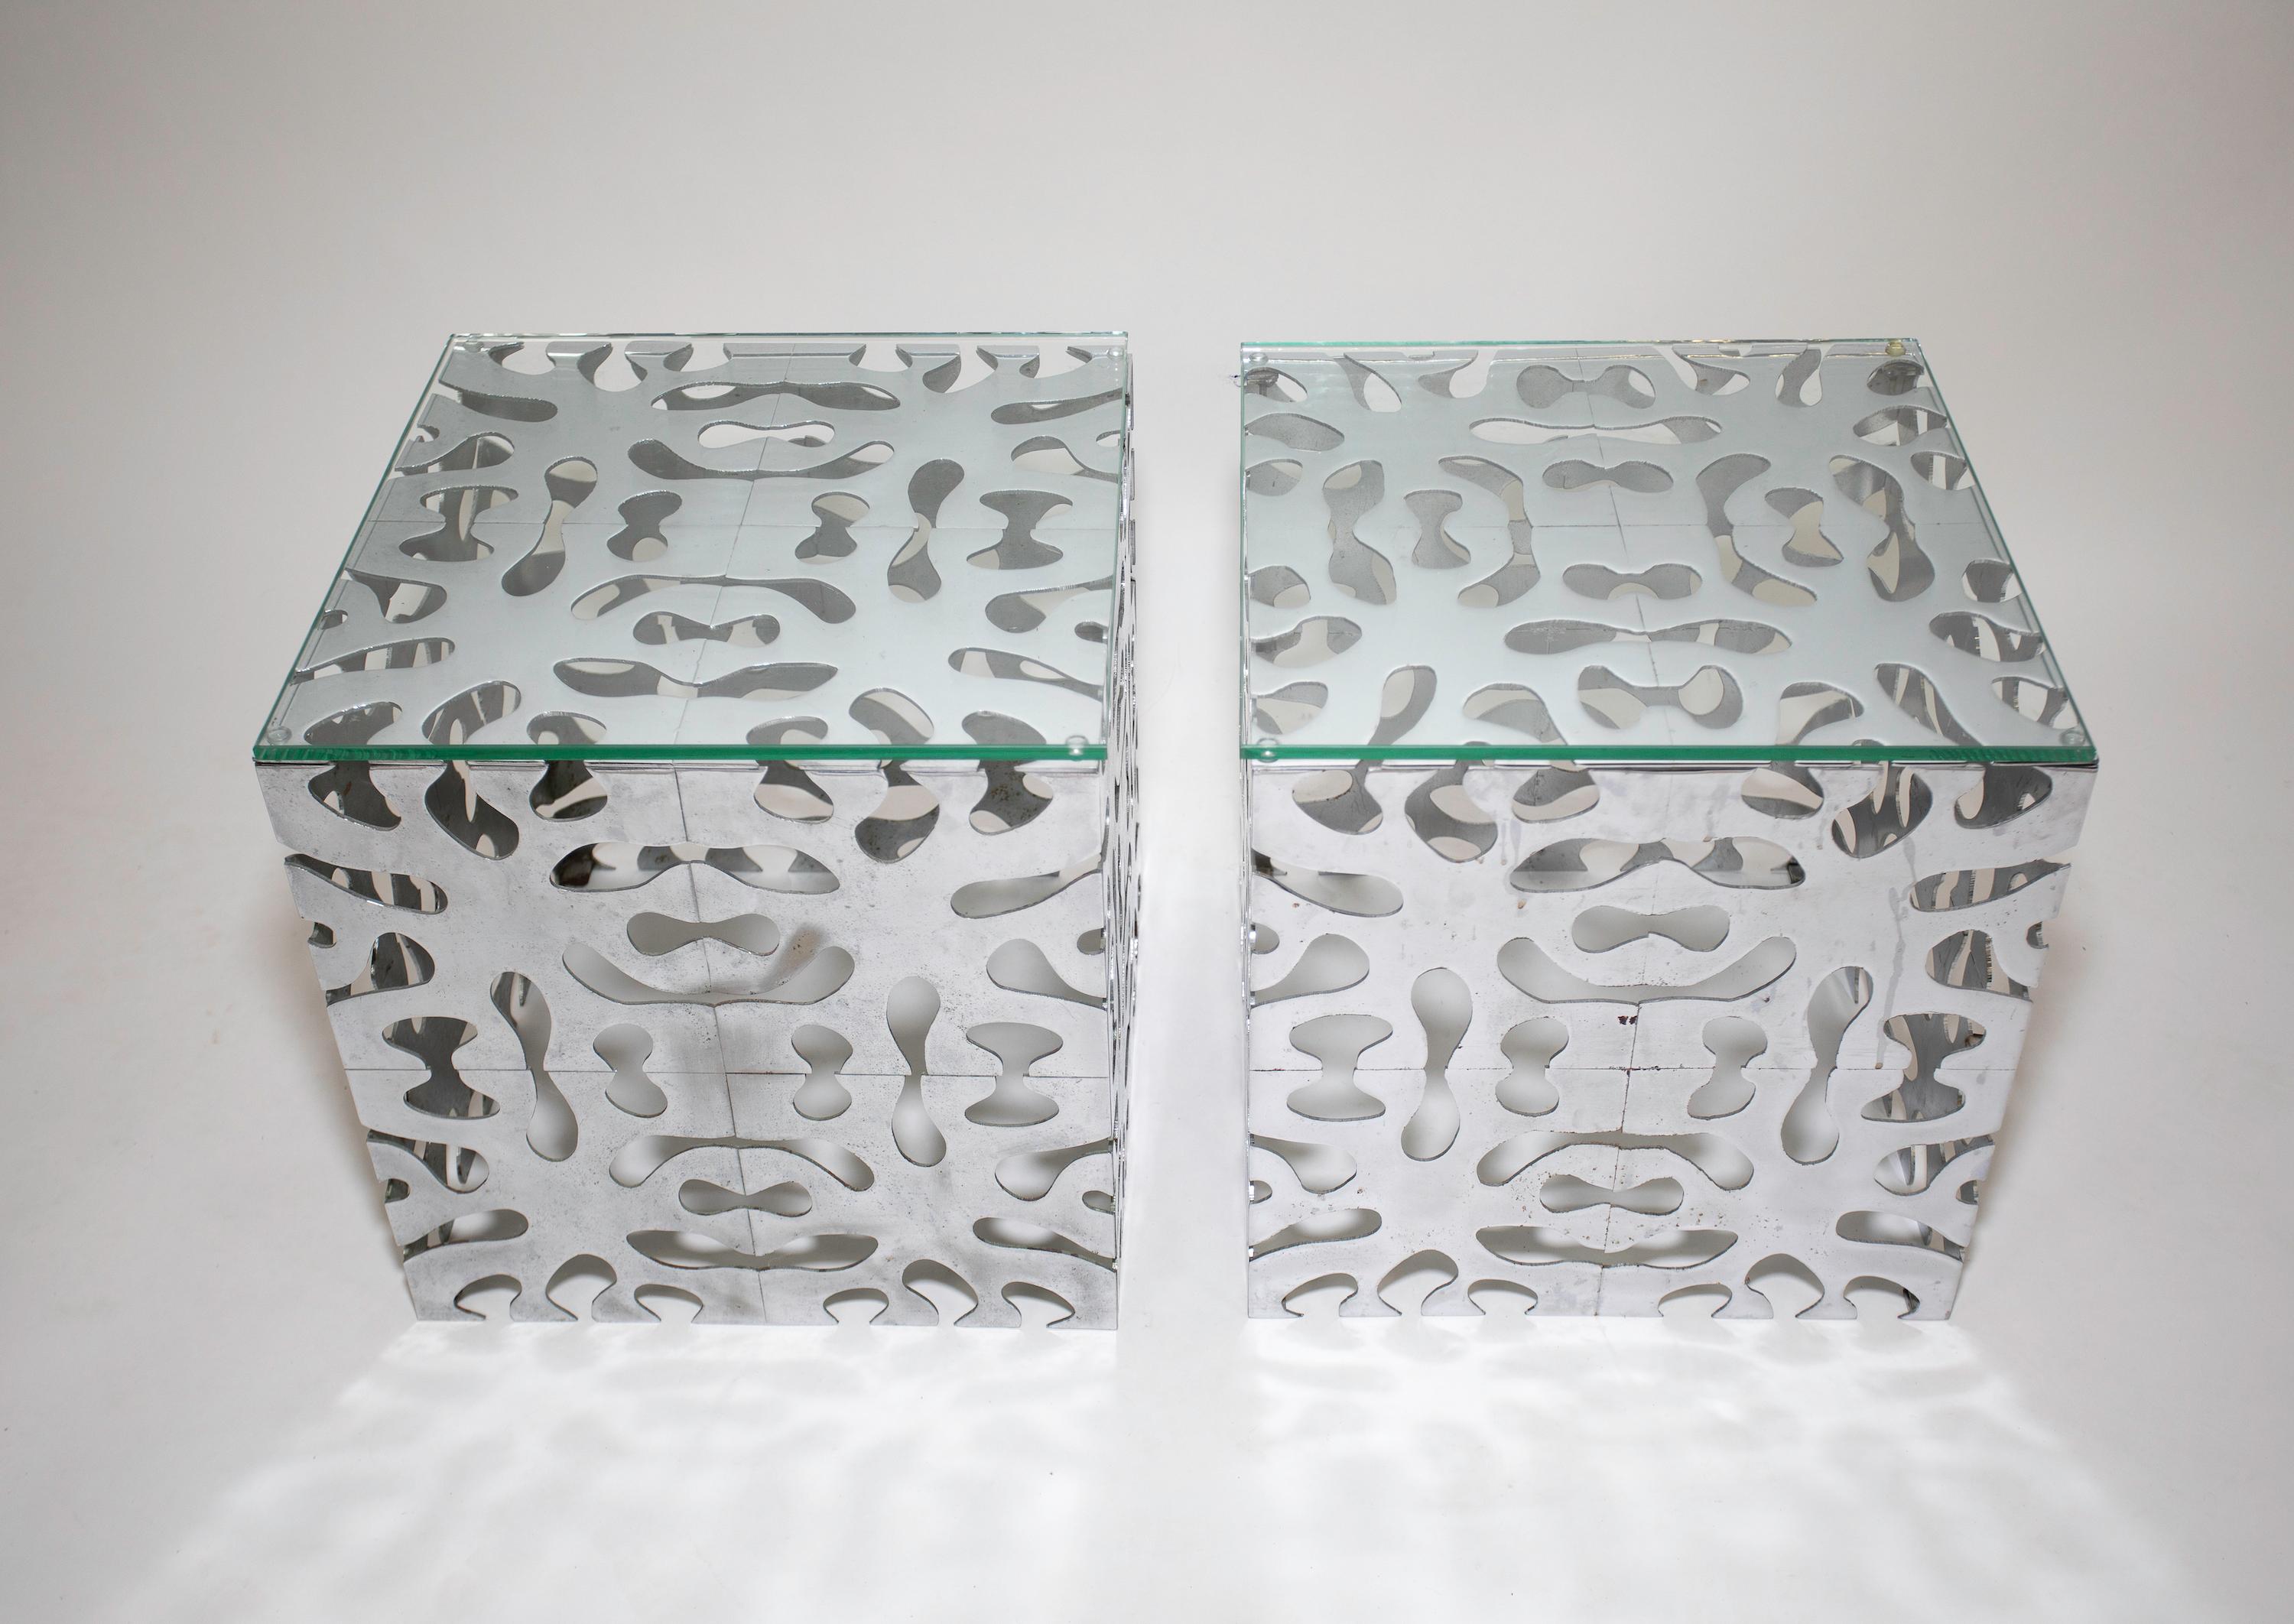 Ein Paar TriMark Puzzle-Tische
Verchromte Metalltische mit Glasplatten